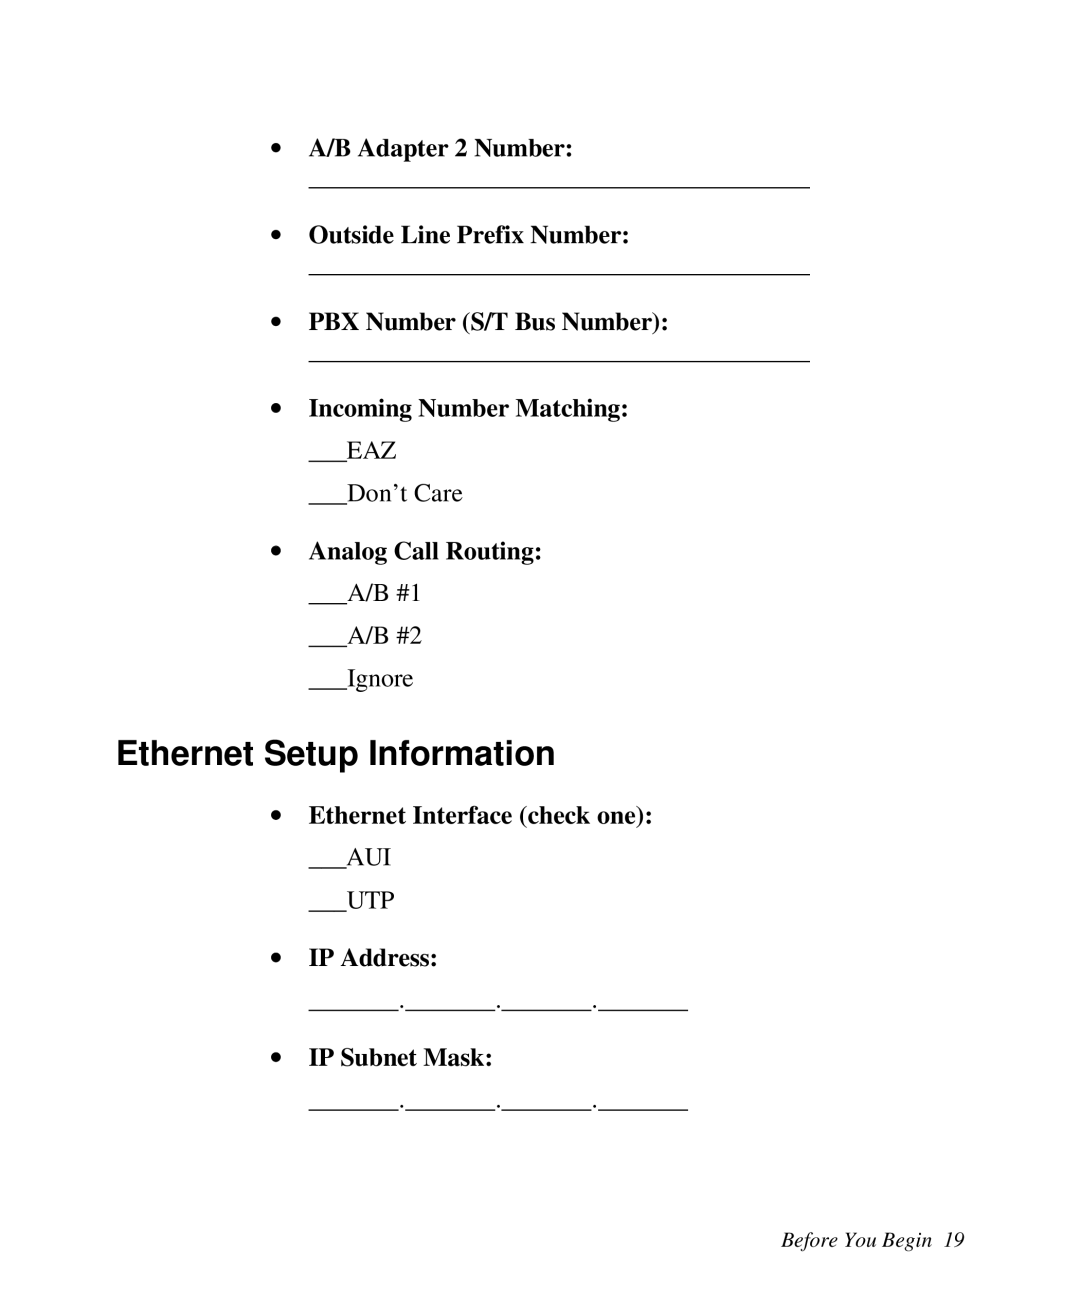 ZyXEL Communications Prestige 128 Ethernet Setup Information, ∙ A/B Adapter 2 Number, ∙ Outside Line Prefix Number 